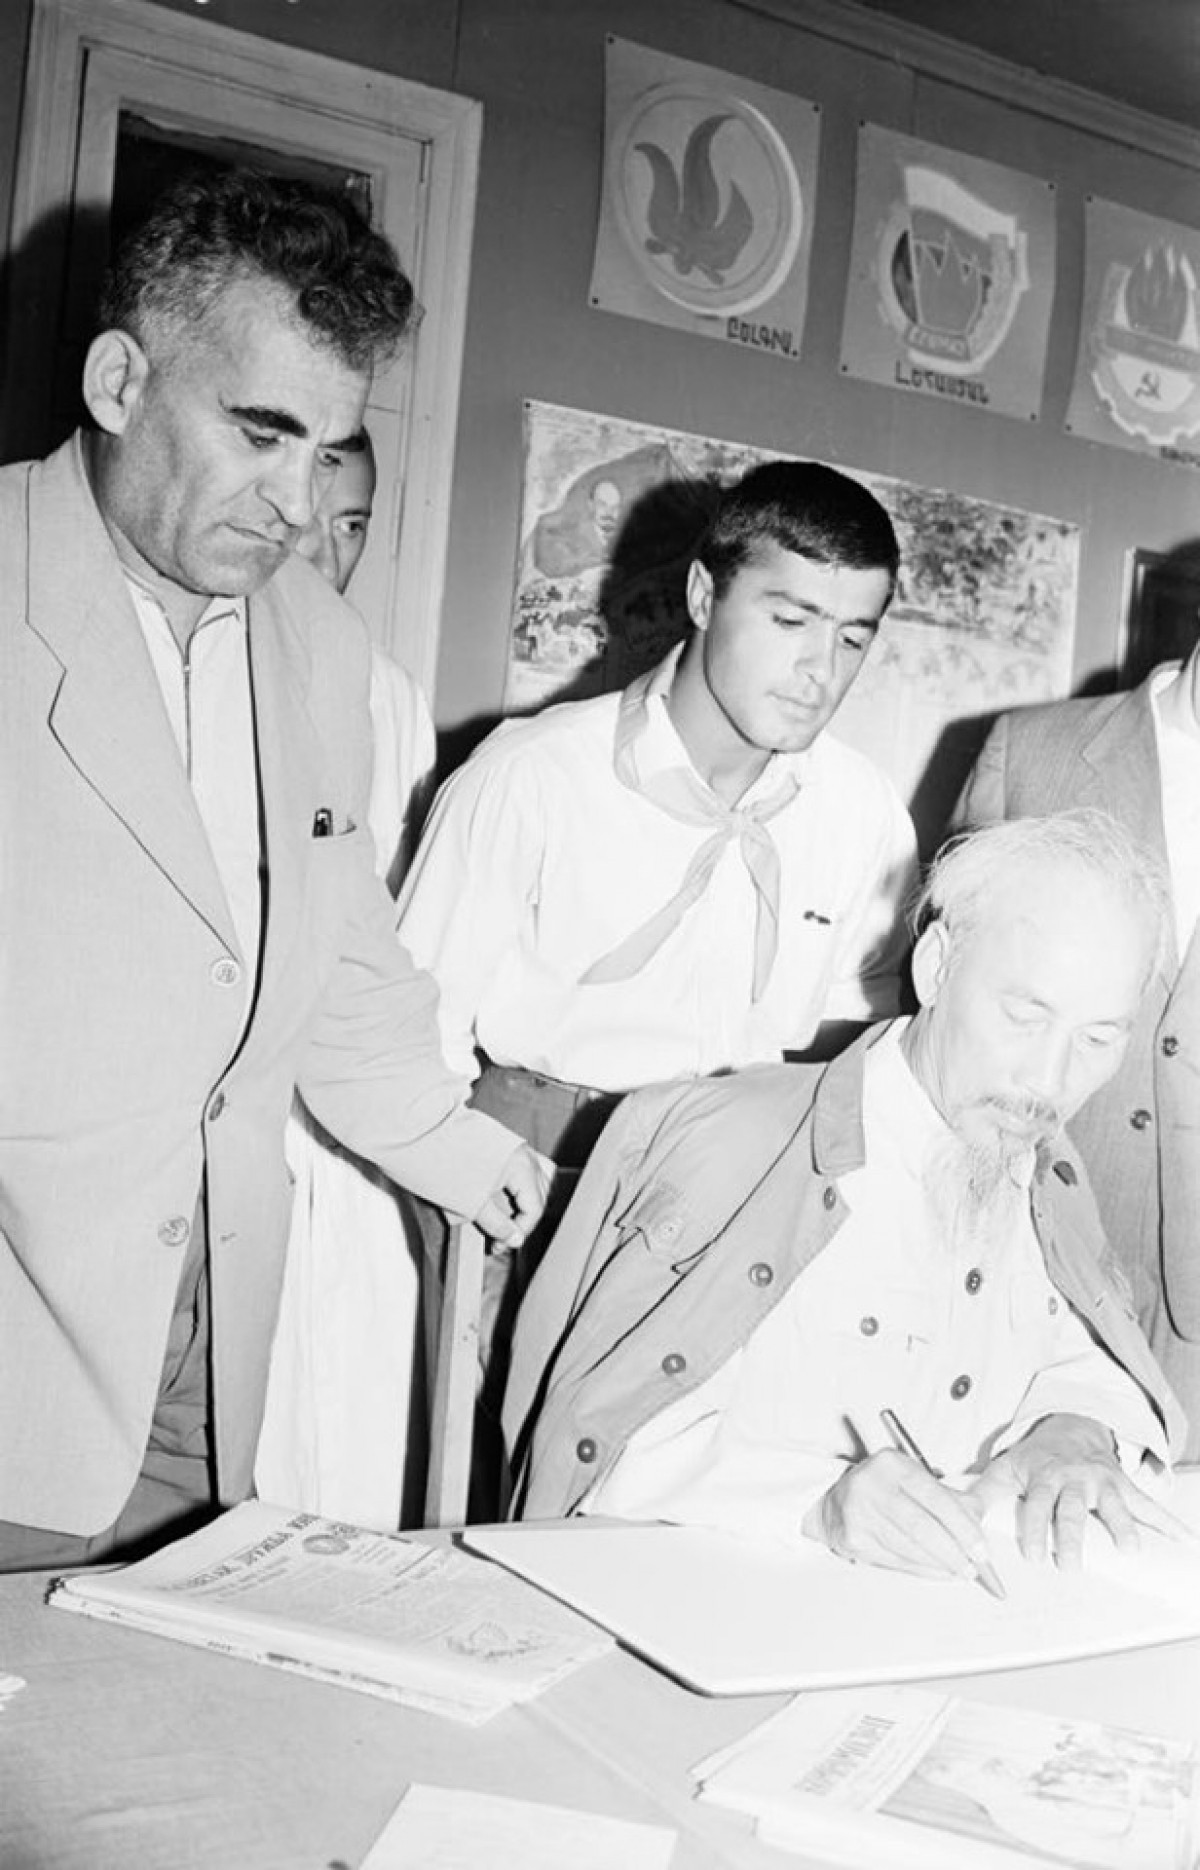 Chủ tịch Hồ Chí Minh tại trại thiếu niên ở thị trấn Hankavan. Đứng cạnh Người là ông Suren Tovmasyan – Bí thư thứ nhất Đảng Cộng sản Armenia. Ông Tovmasyan về sau trở thành Đại sứ Liên Xô tại Việt Nam trong nhiệm kỳ 1961-1964. (Ảnh do Đại sứ Kazhoyan cung cấp).